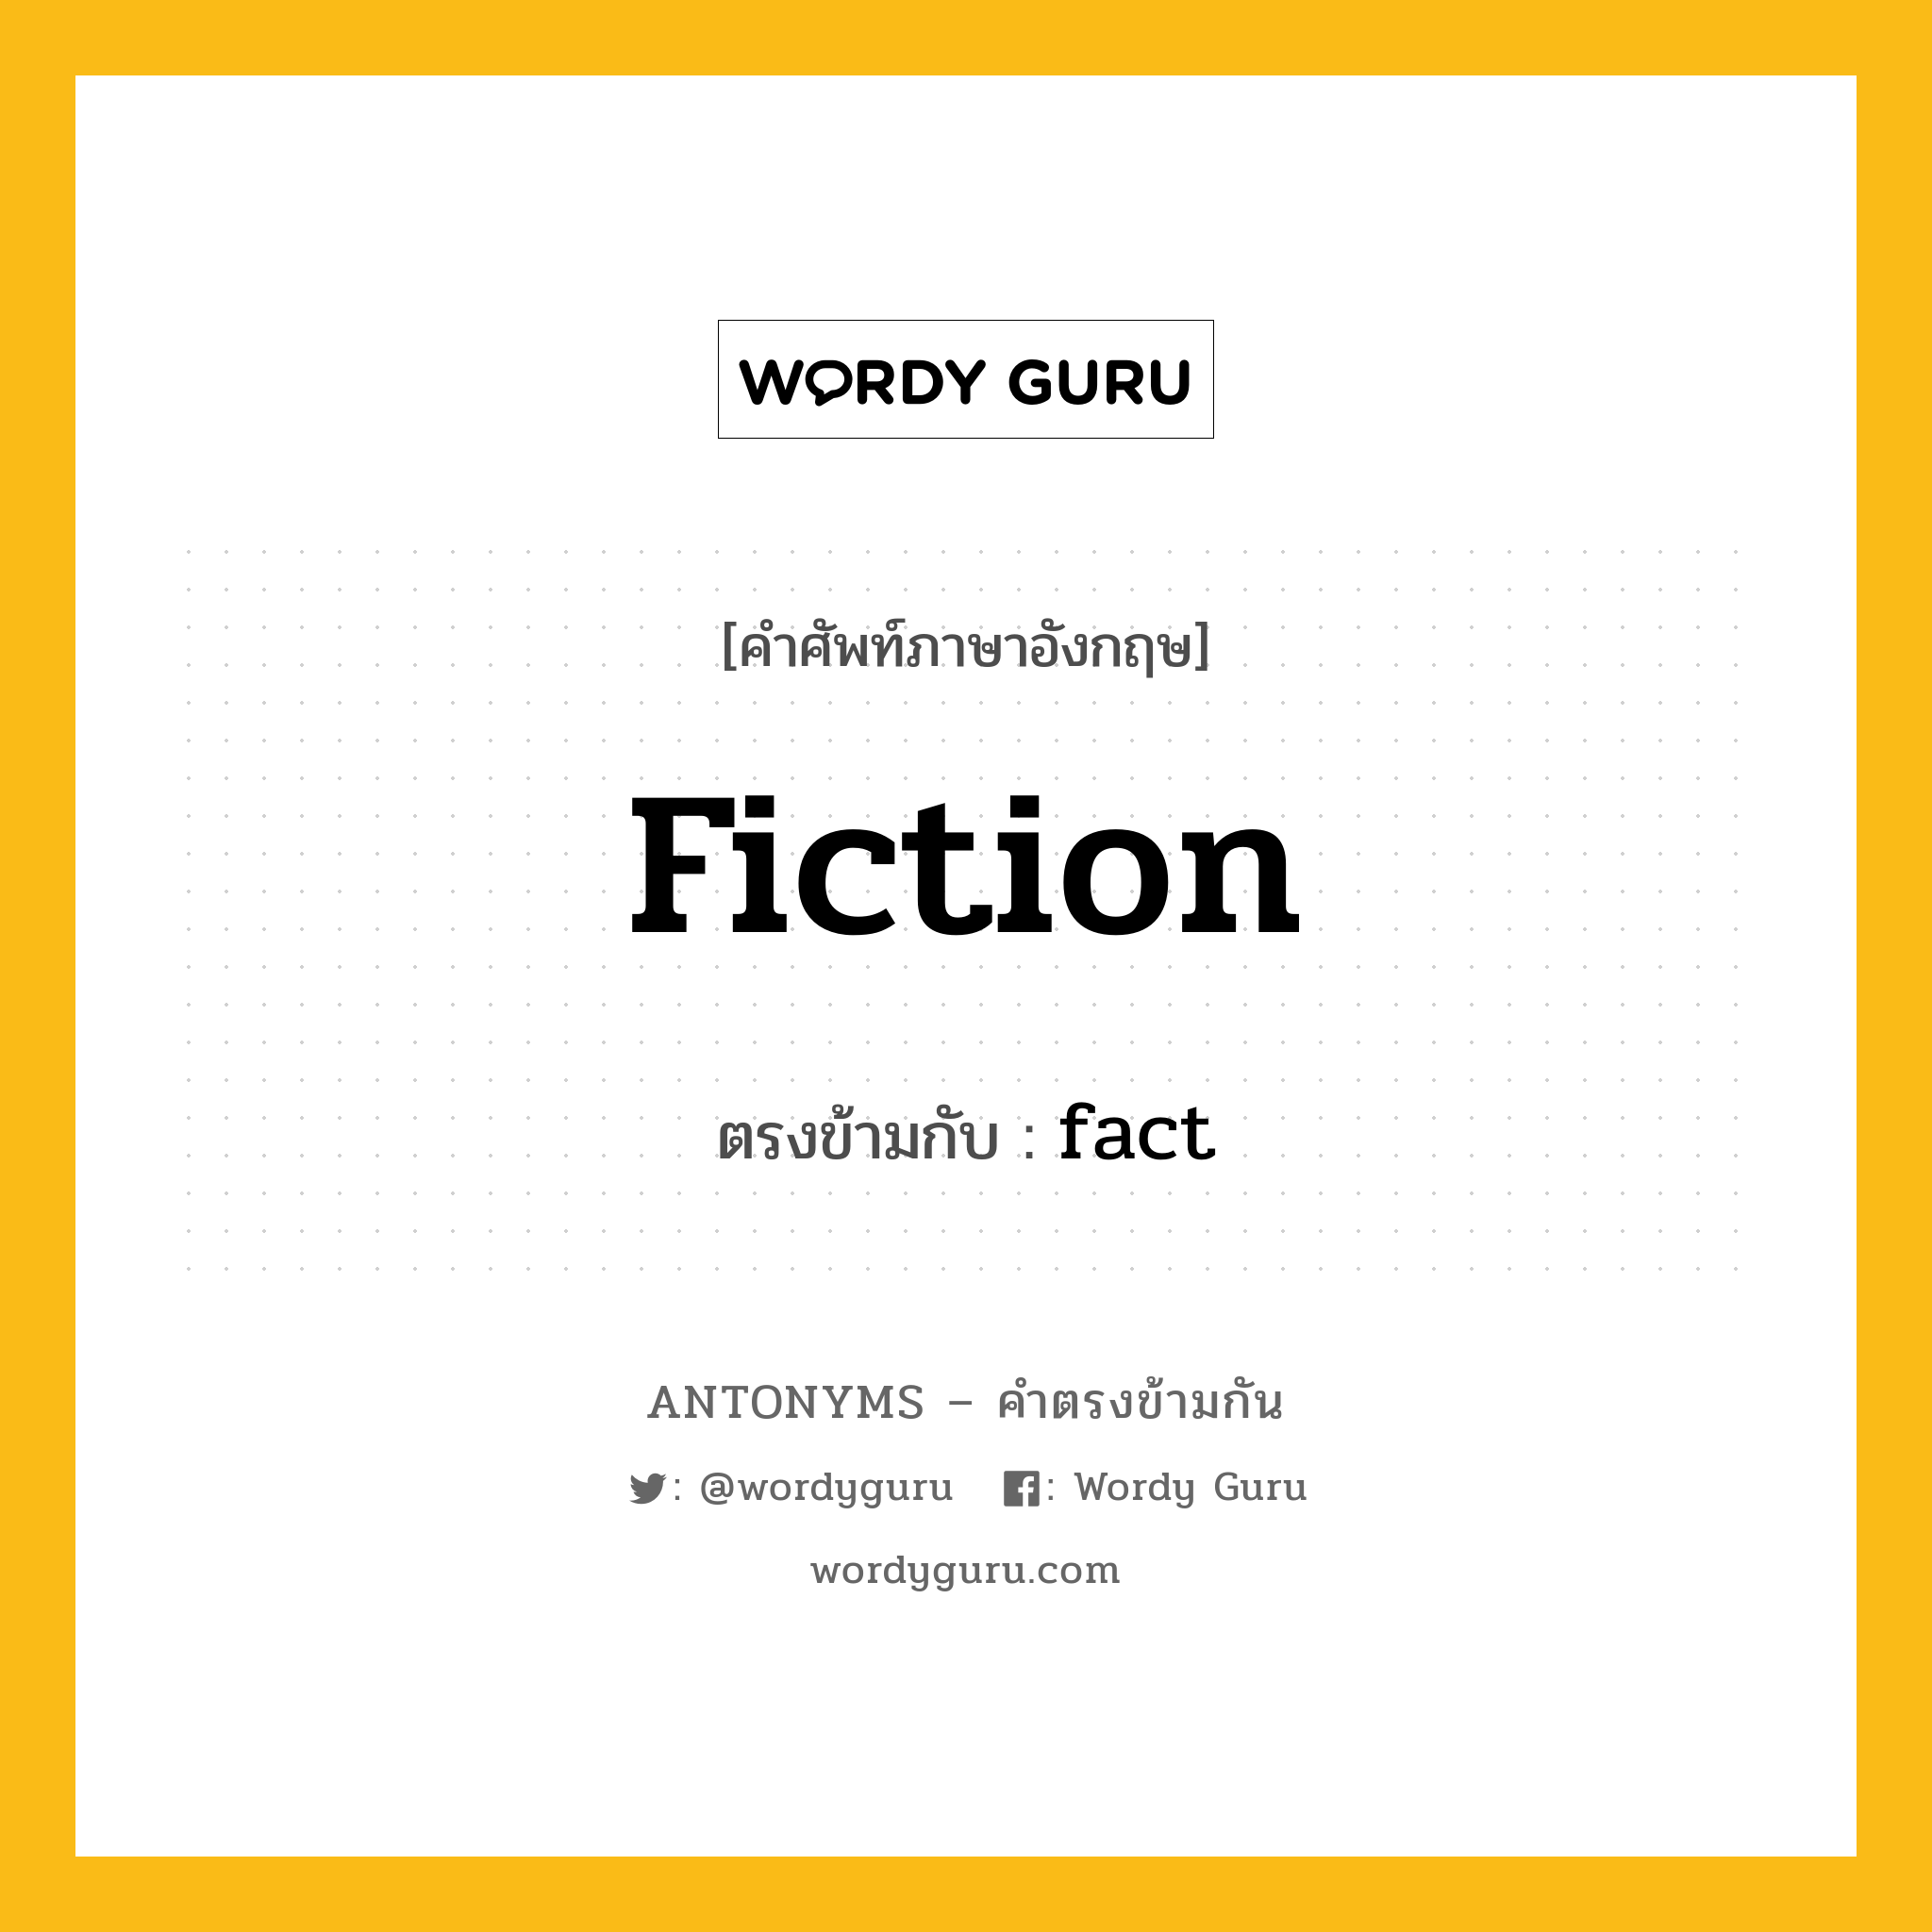 fiction เป็นคำตรงข้ามกับคำไหนบ้าง?, คำศัพท์ภาษาอังกฤษ fiction ตรงข้ามกับ fact หมวด fact